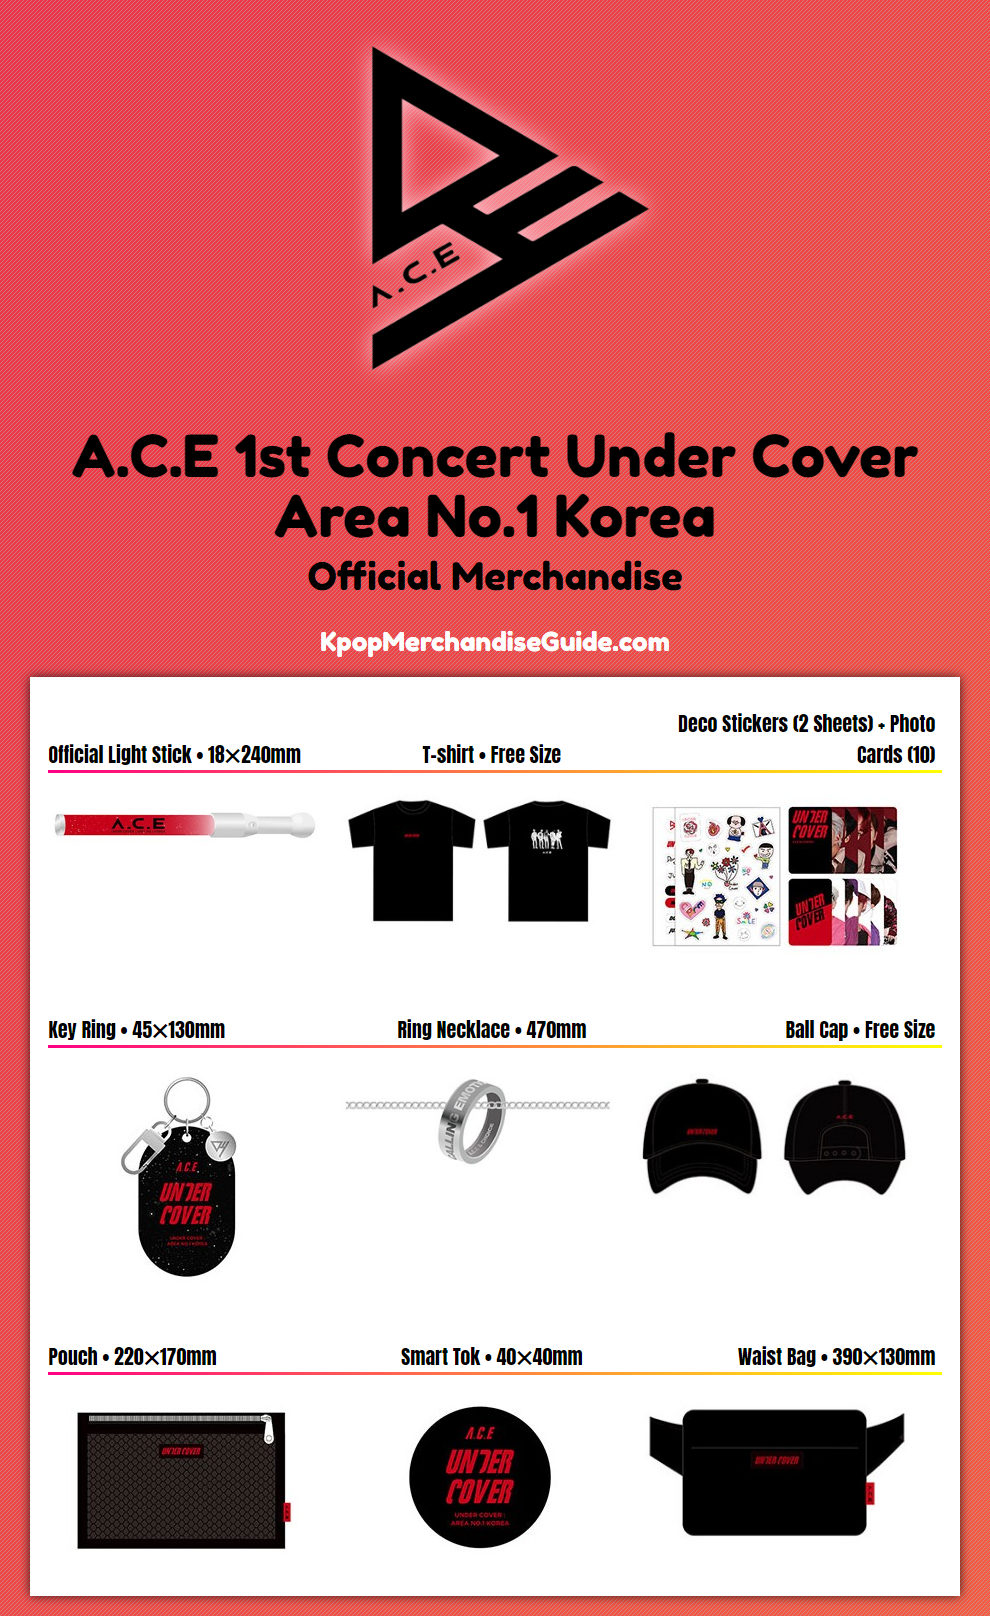 ACE 1st Concert Under Cover: Area No.1 Korea Merchandise